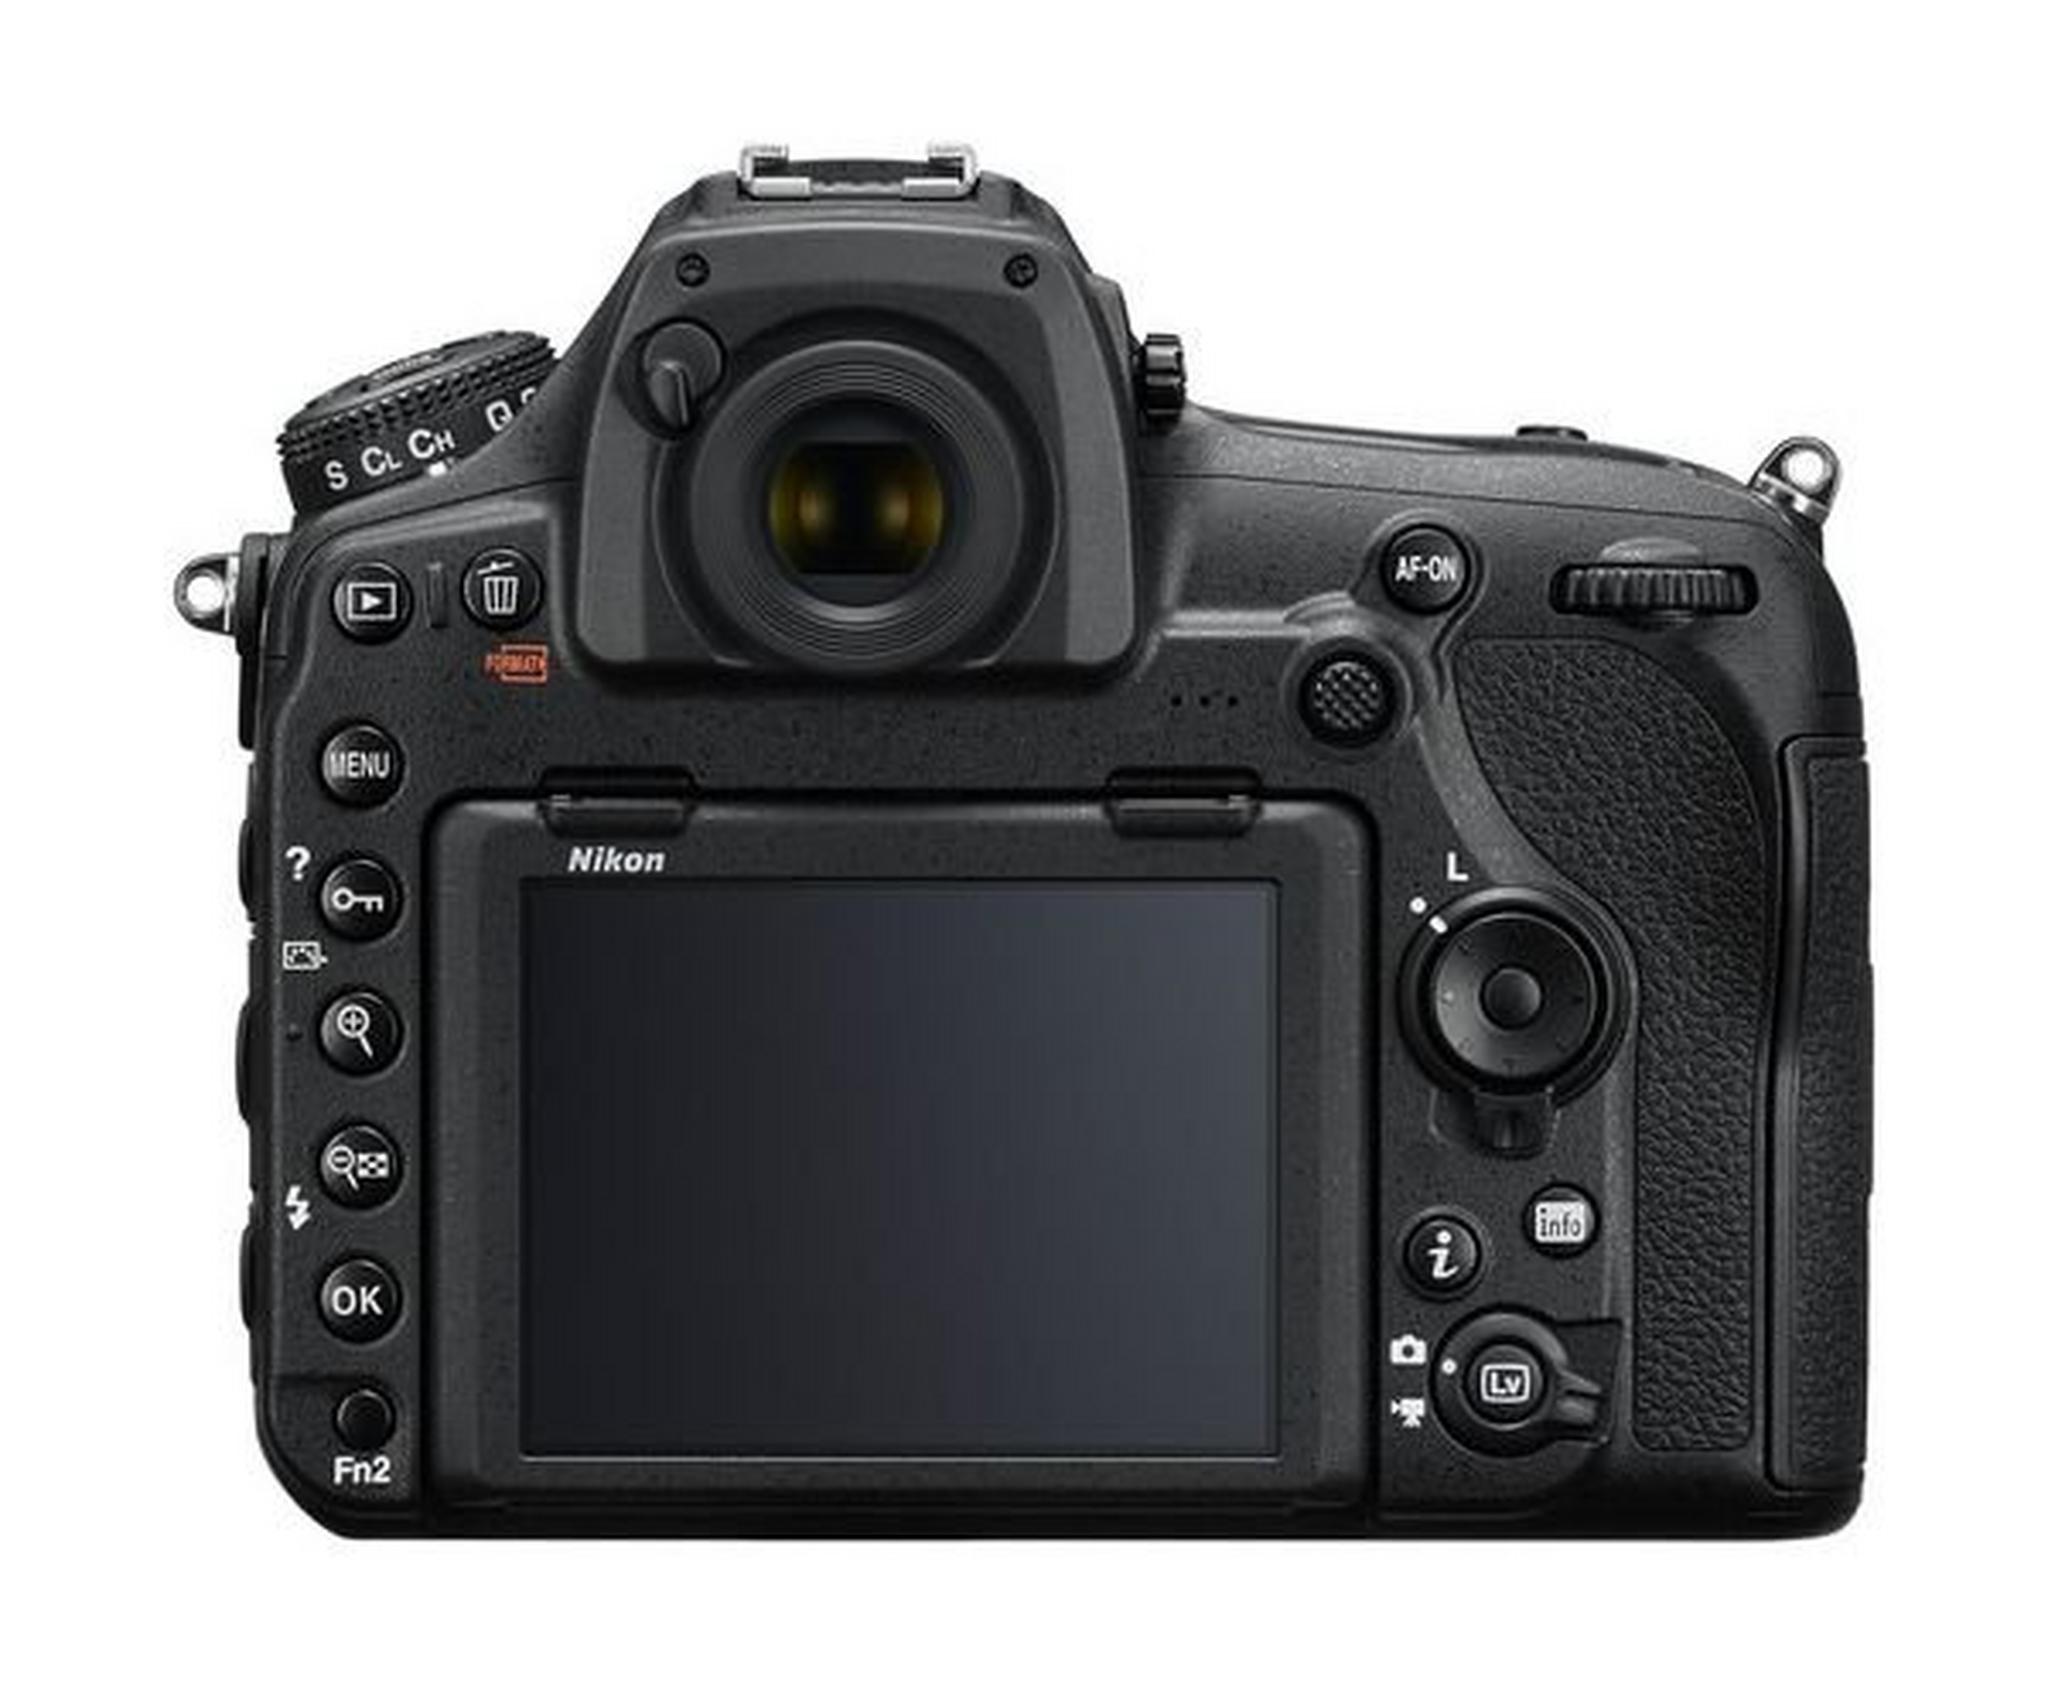 Nikon D850 DSLR Camera